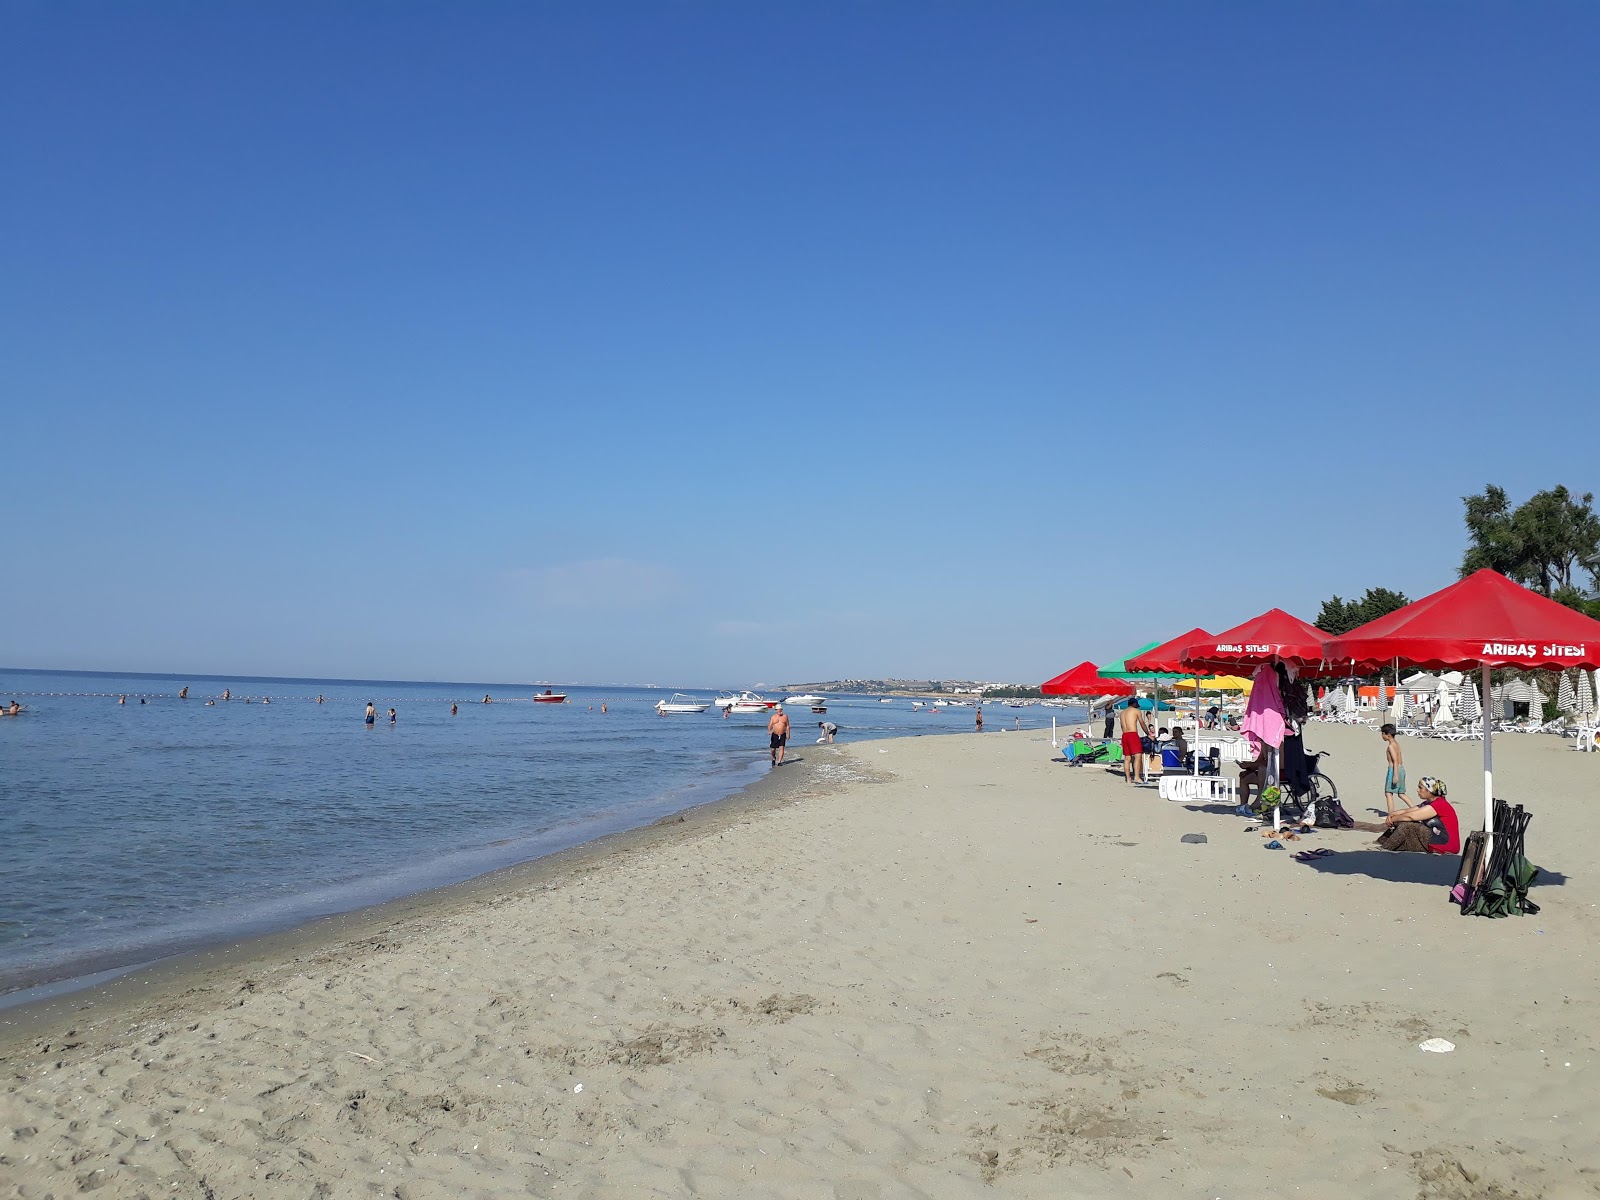 Fotografie cu Ohri beach cu o suprafață de nisip maro